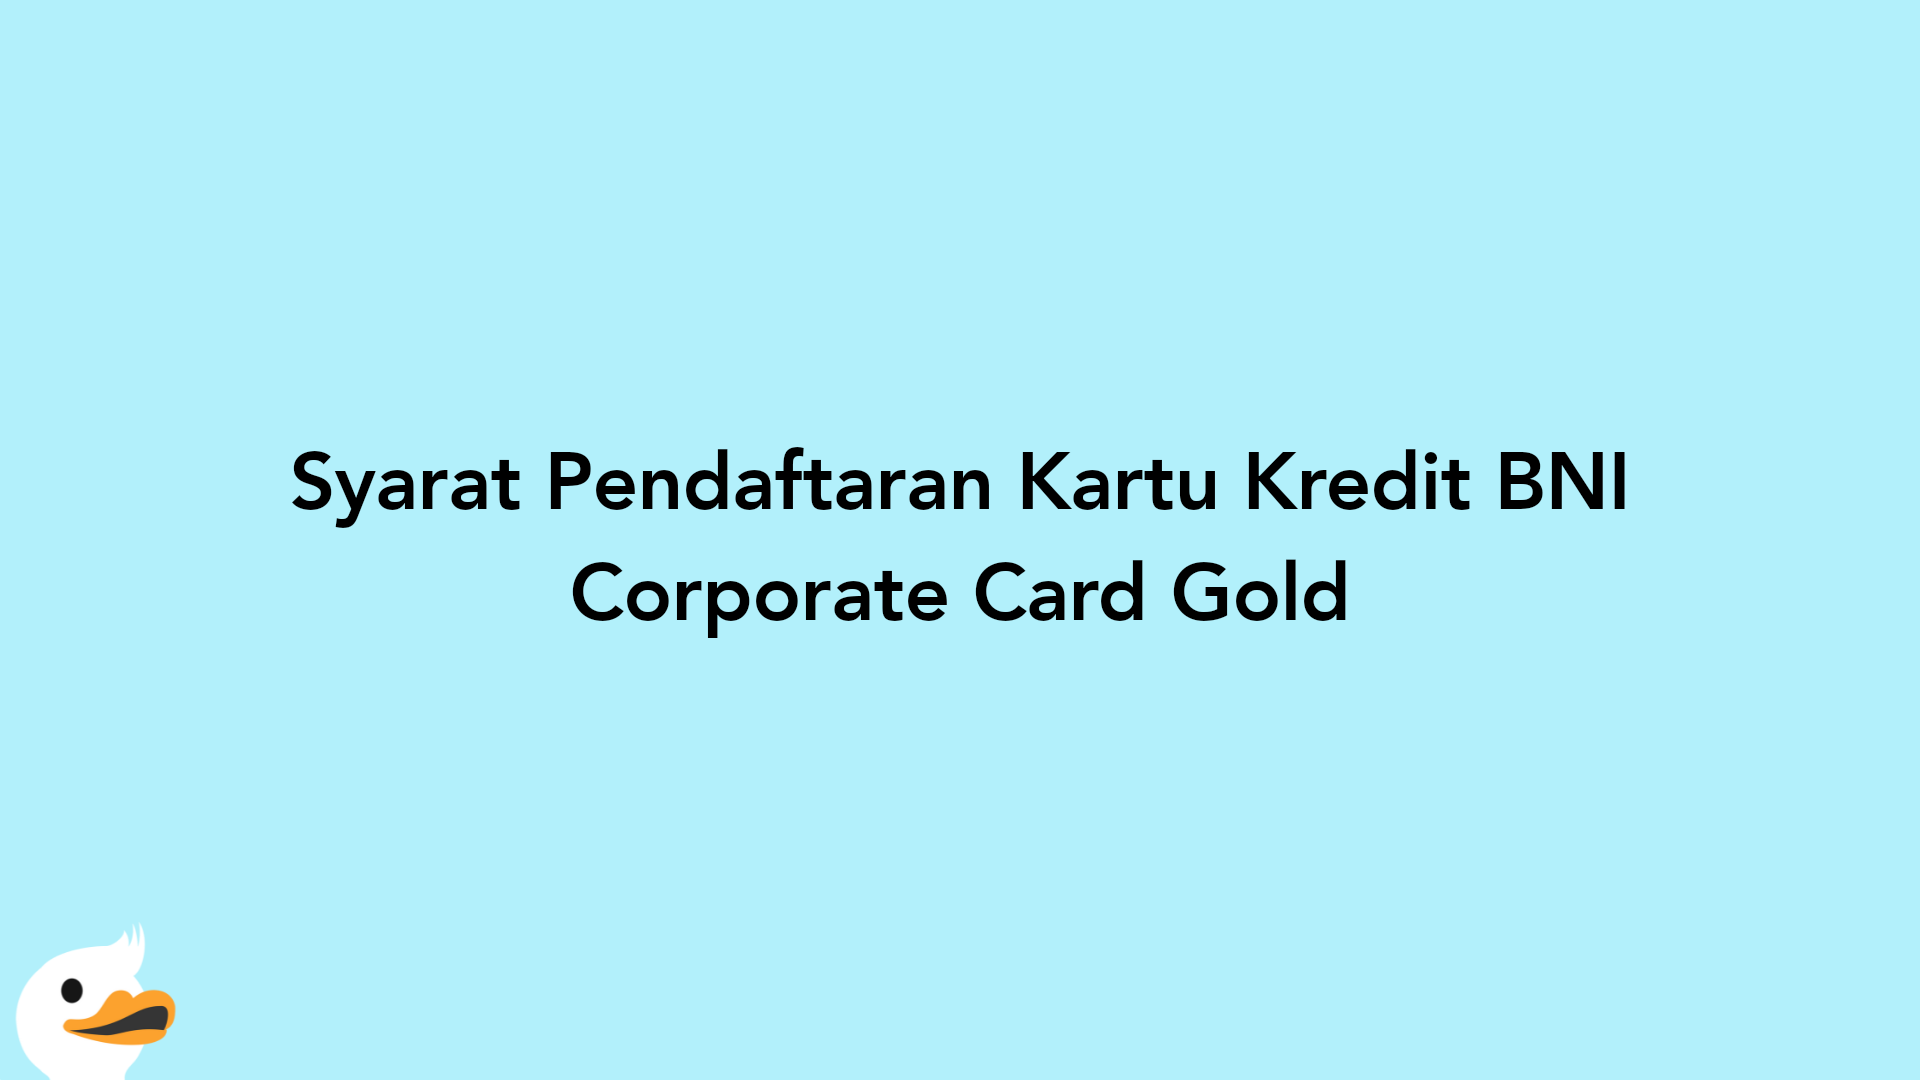 Syarat Pendaftaran Kartu Kredit BNI Corporate Card Gold